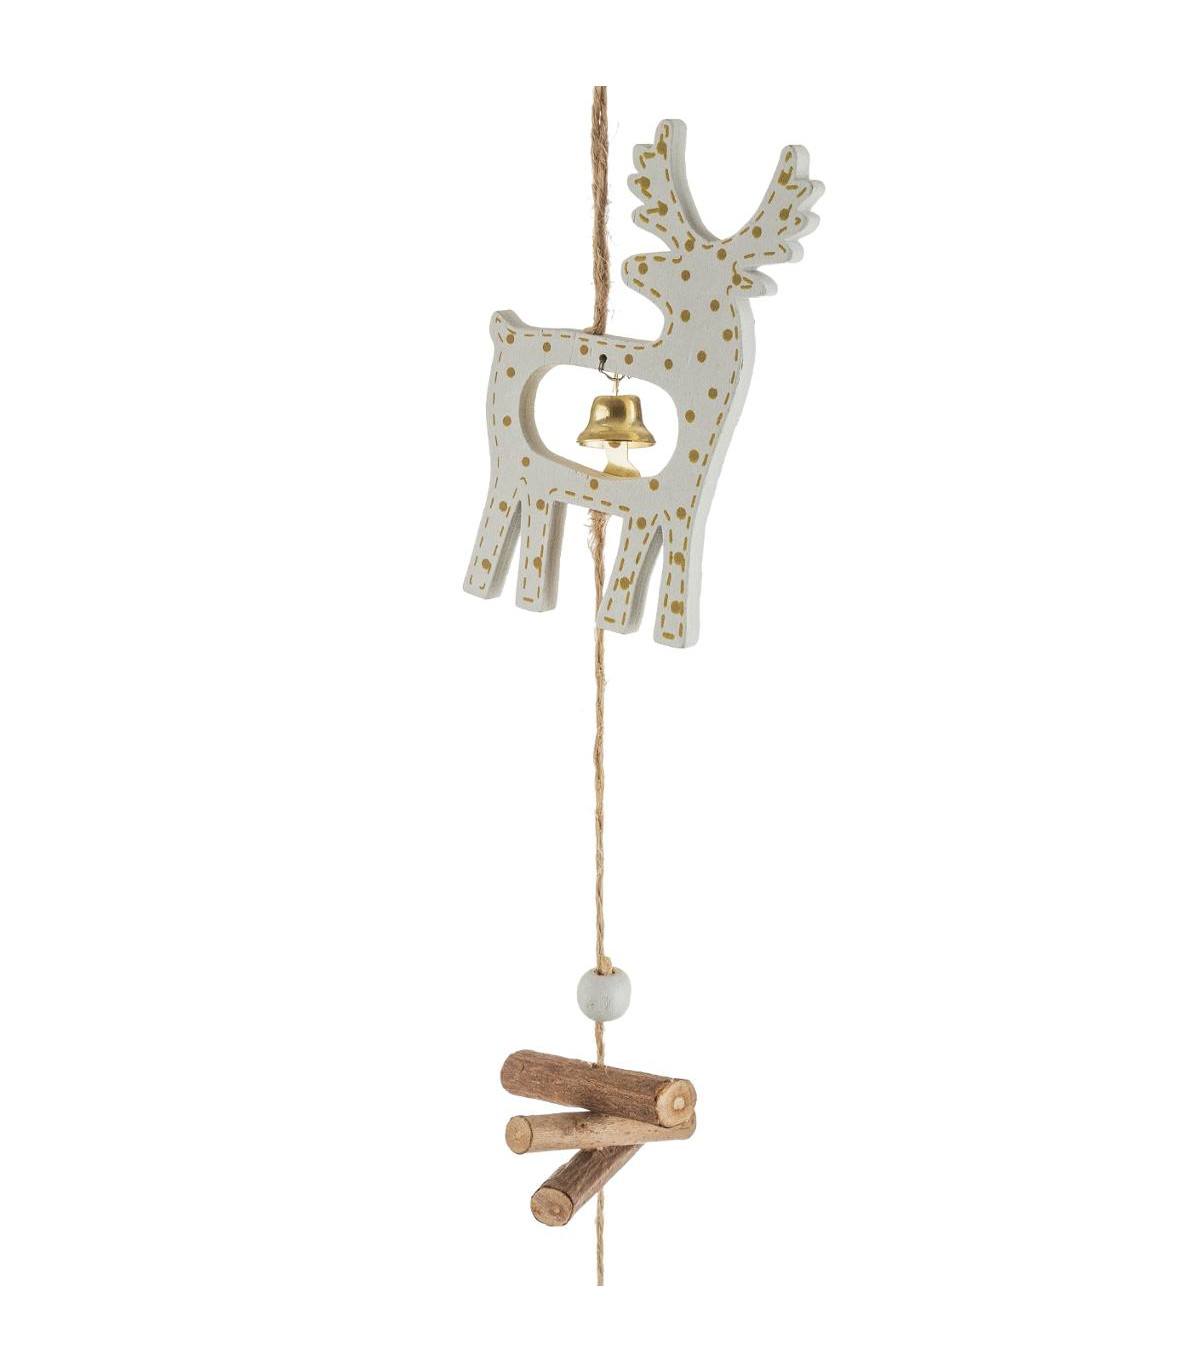 Guirlande de noël sujet en bois avec clochette dorée l 150 cm